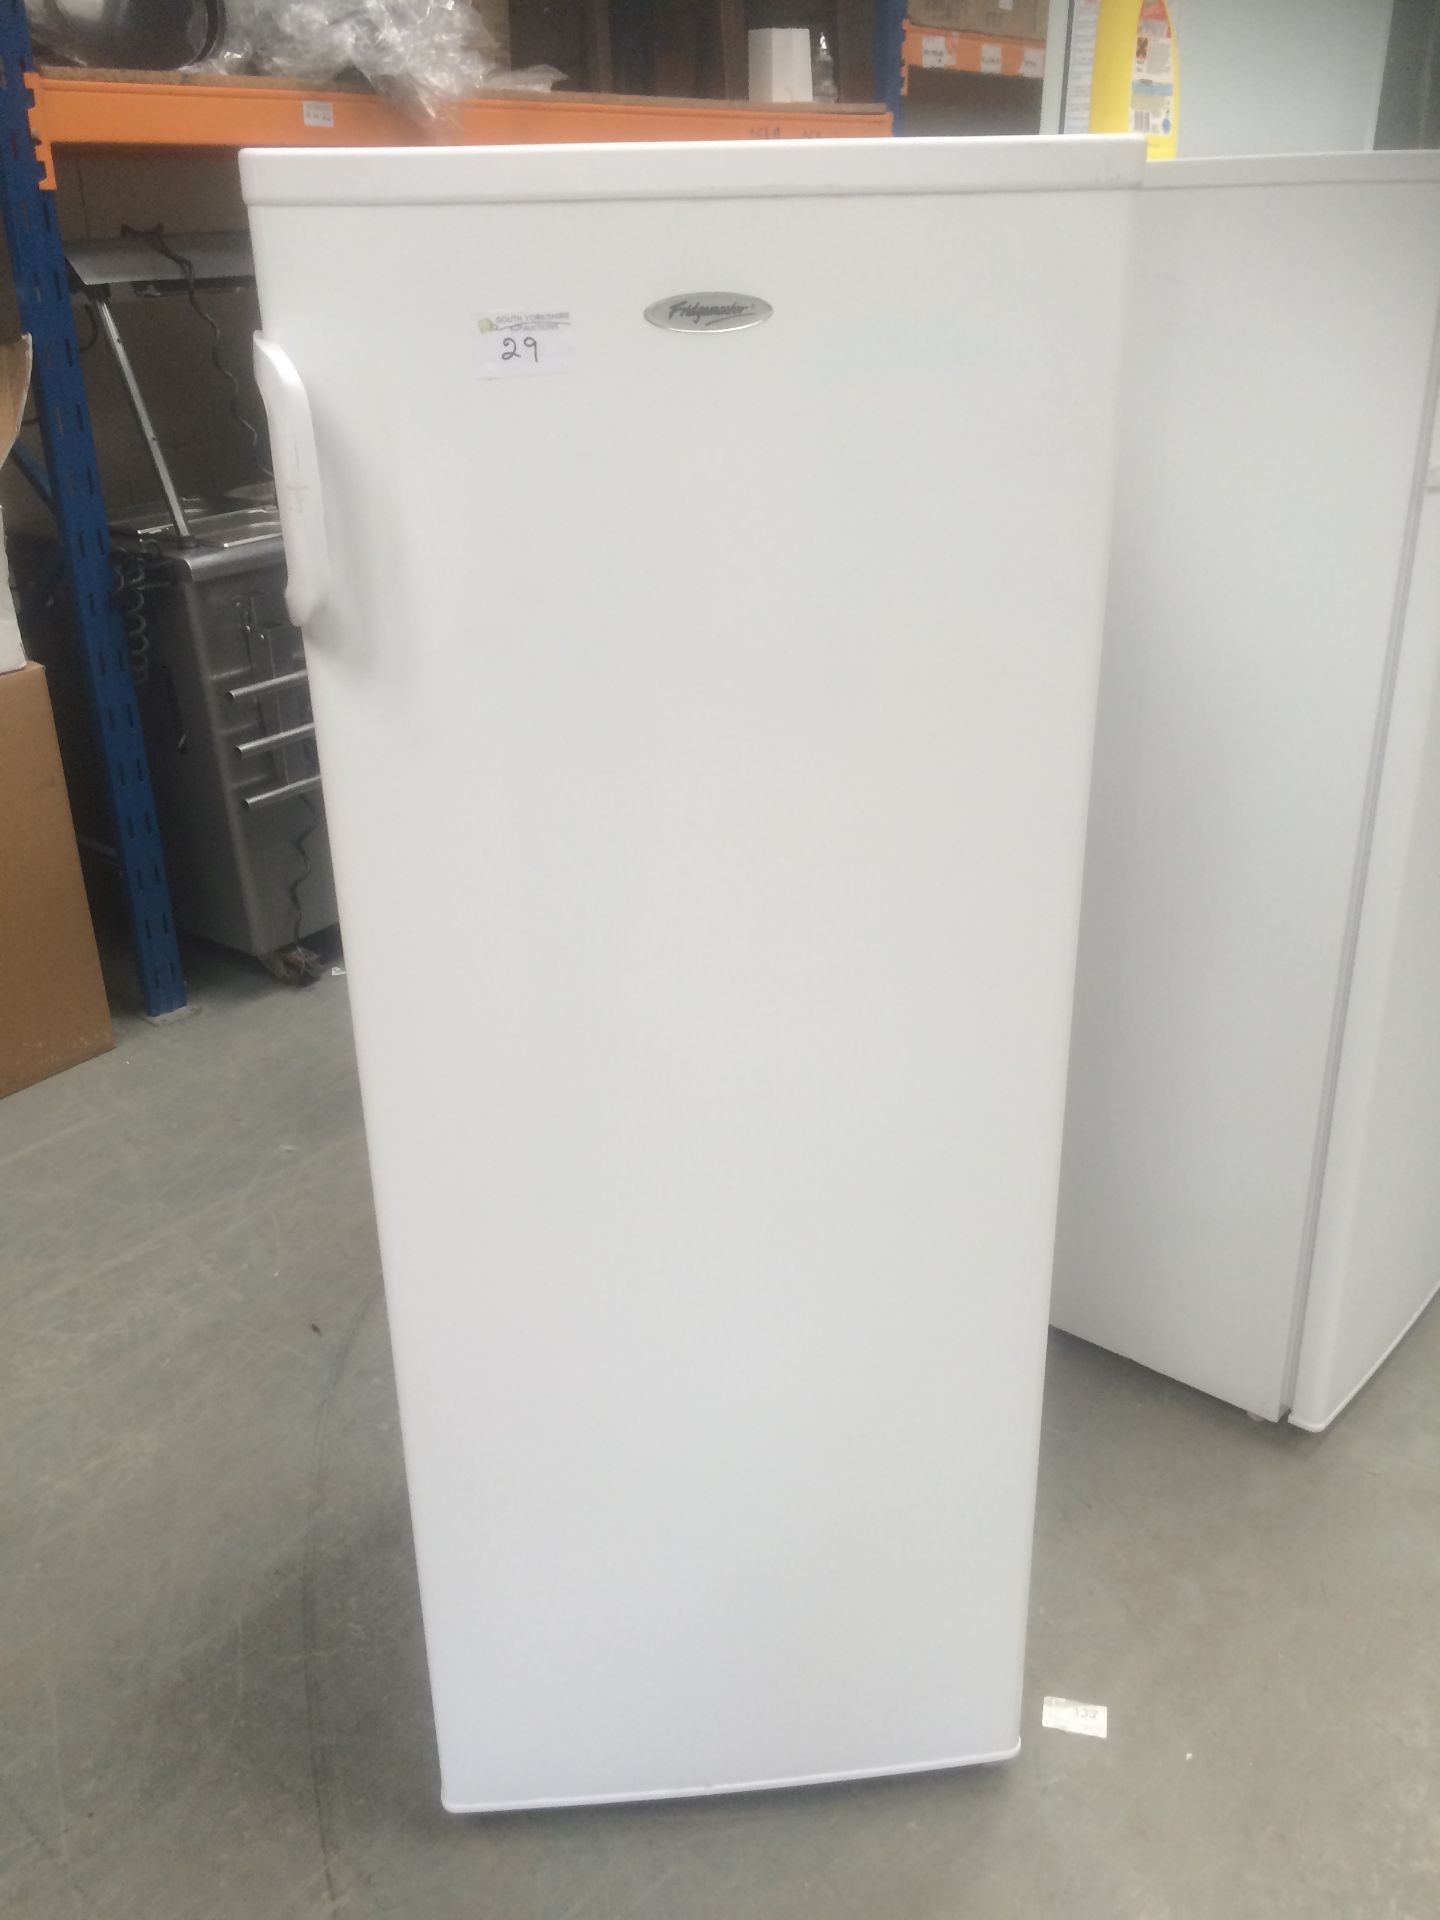 Fridgemaster freezer working 5 compartments 550mmX550mmX1440mm high